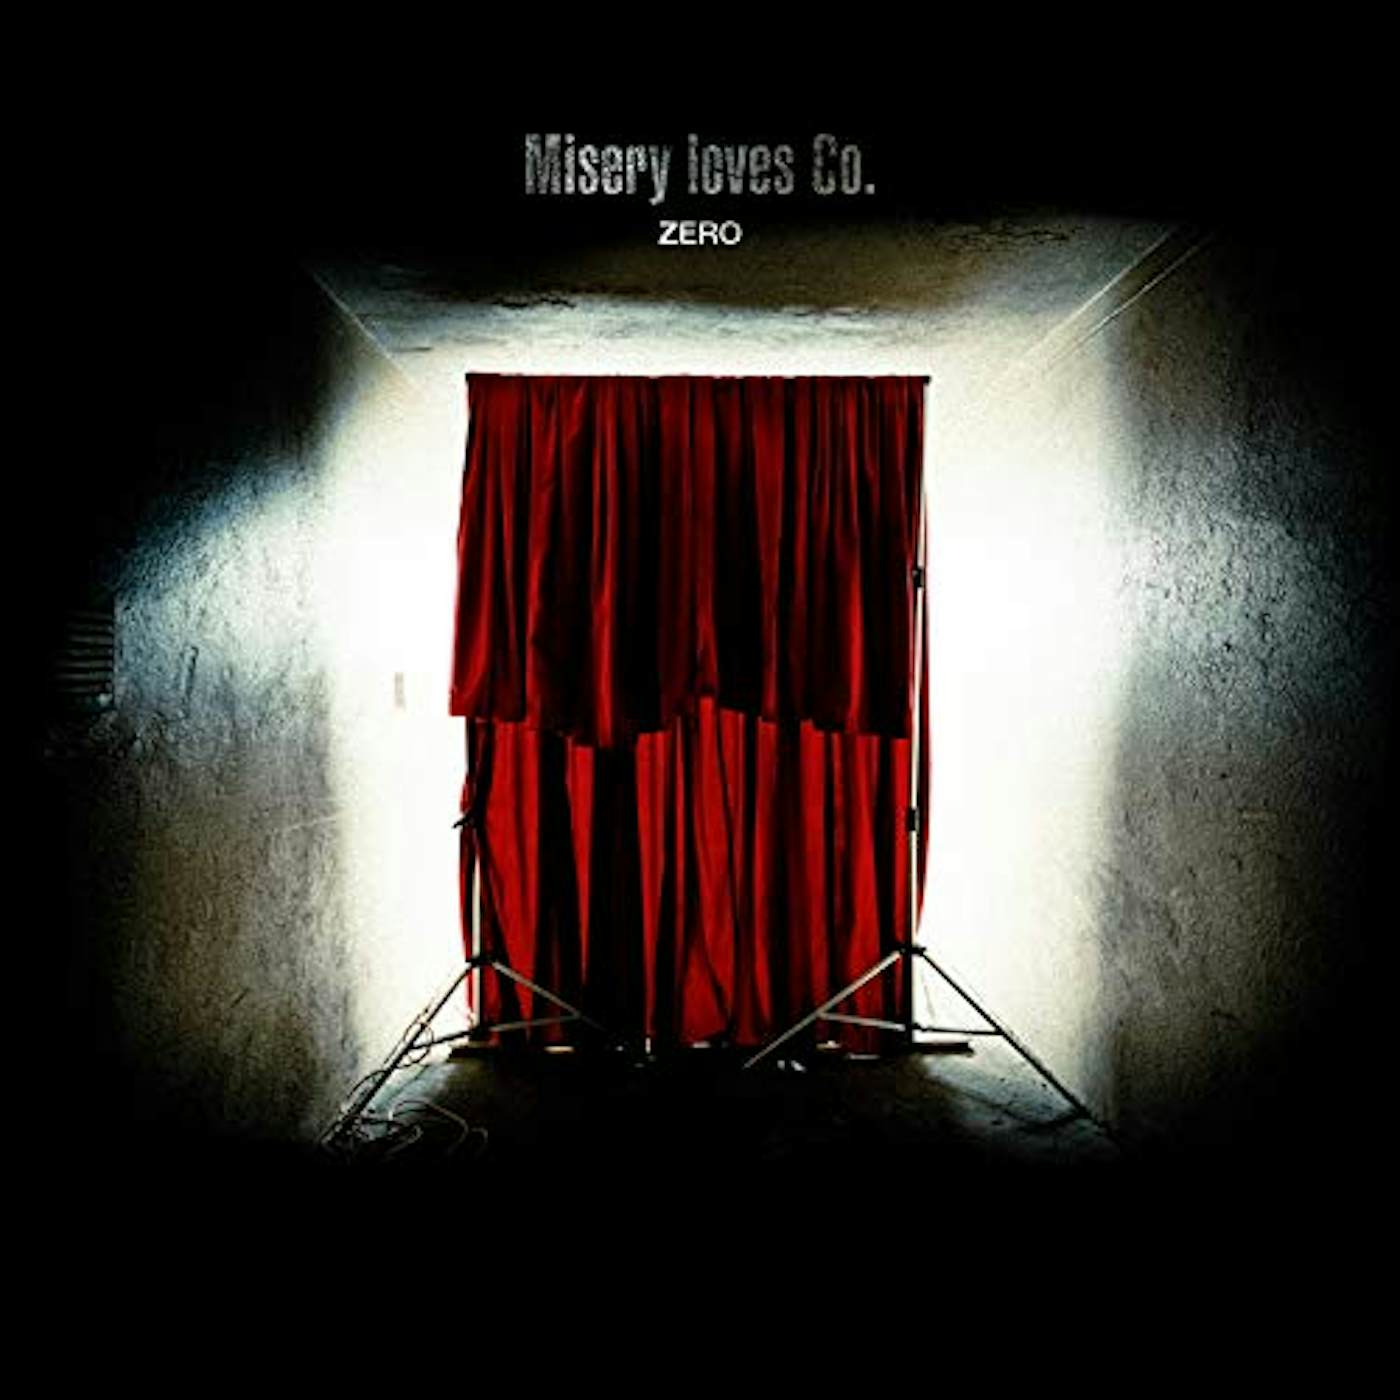 Misery Loves Co. Vinyl Record